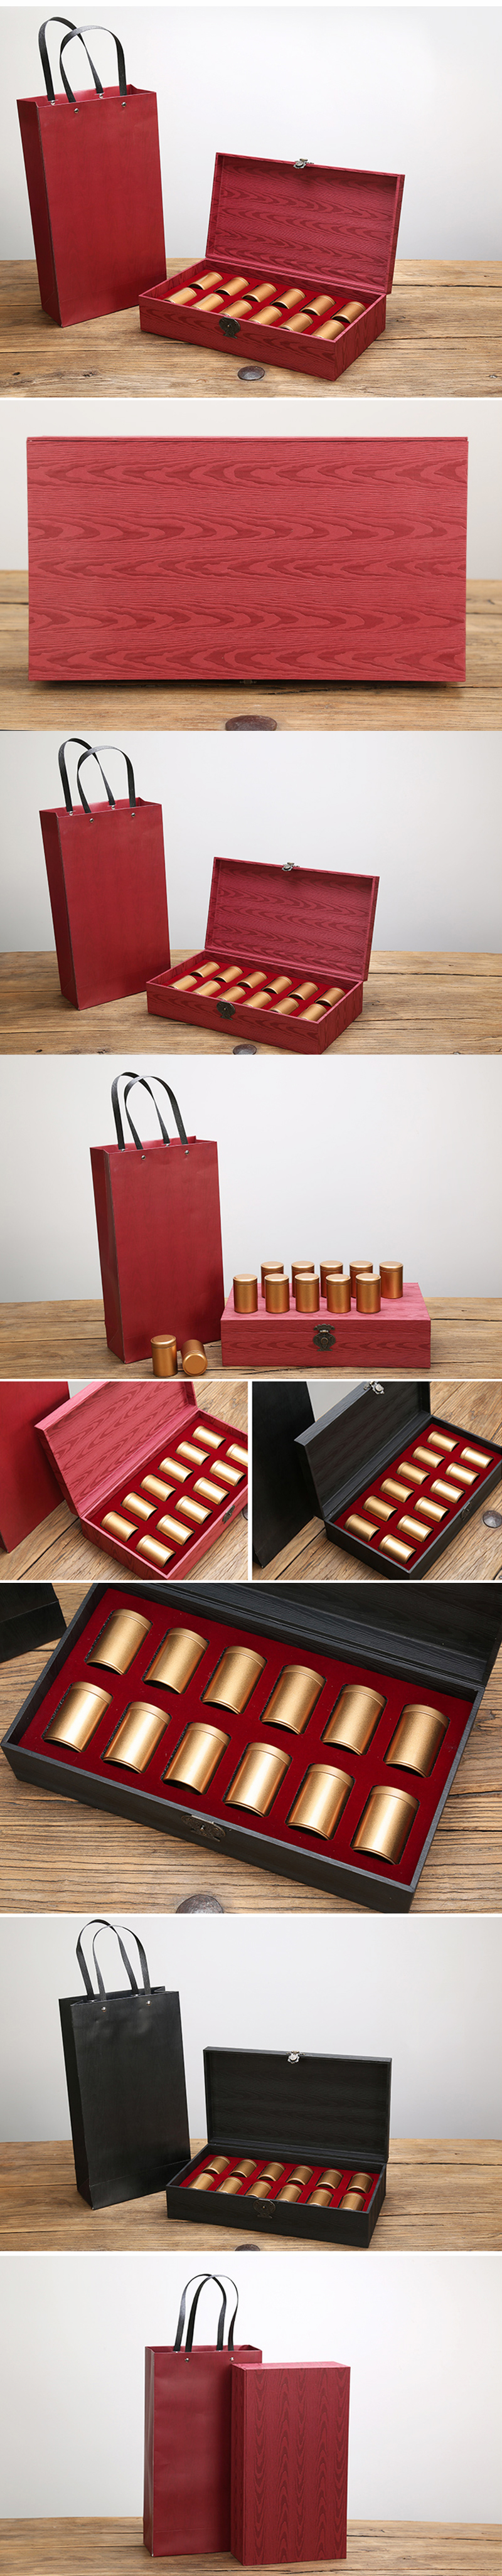 茶葉禮盒木盒包裝設計